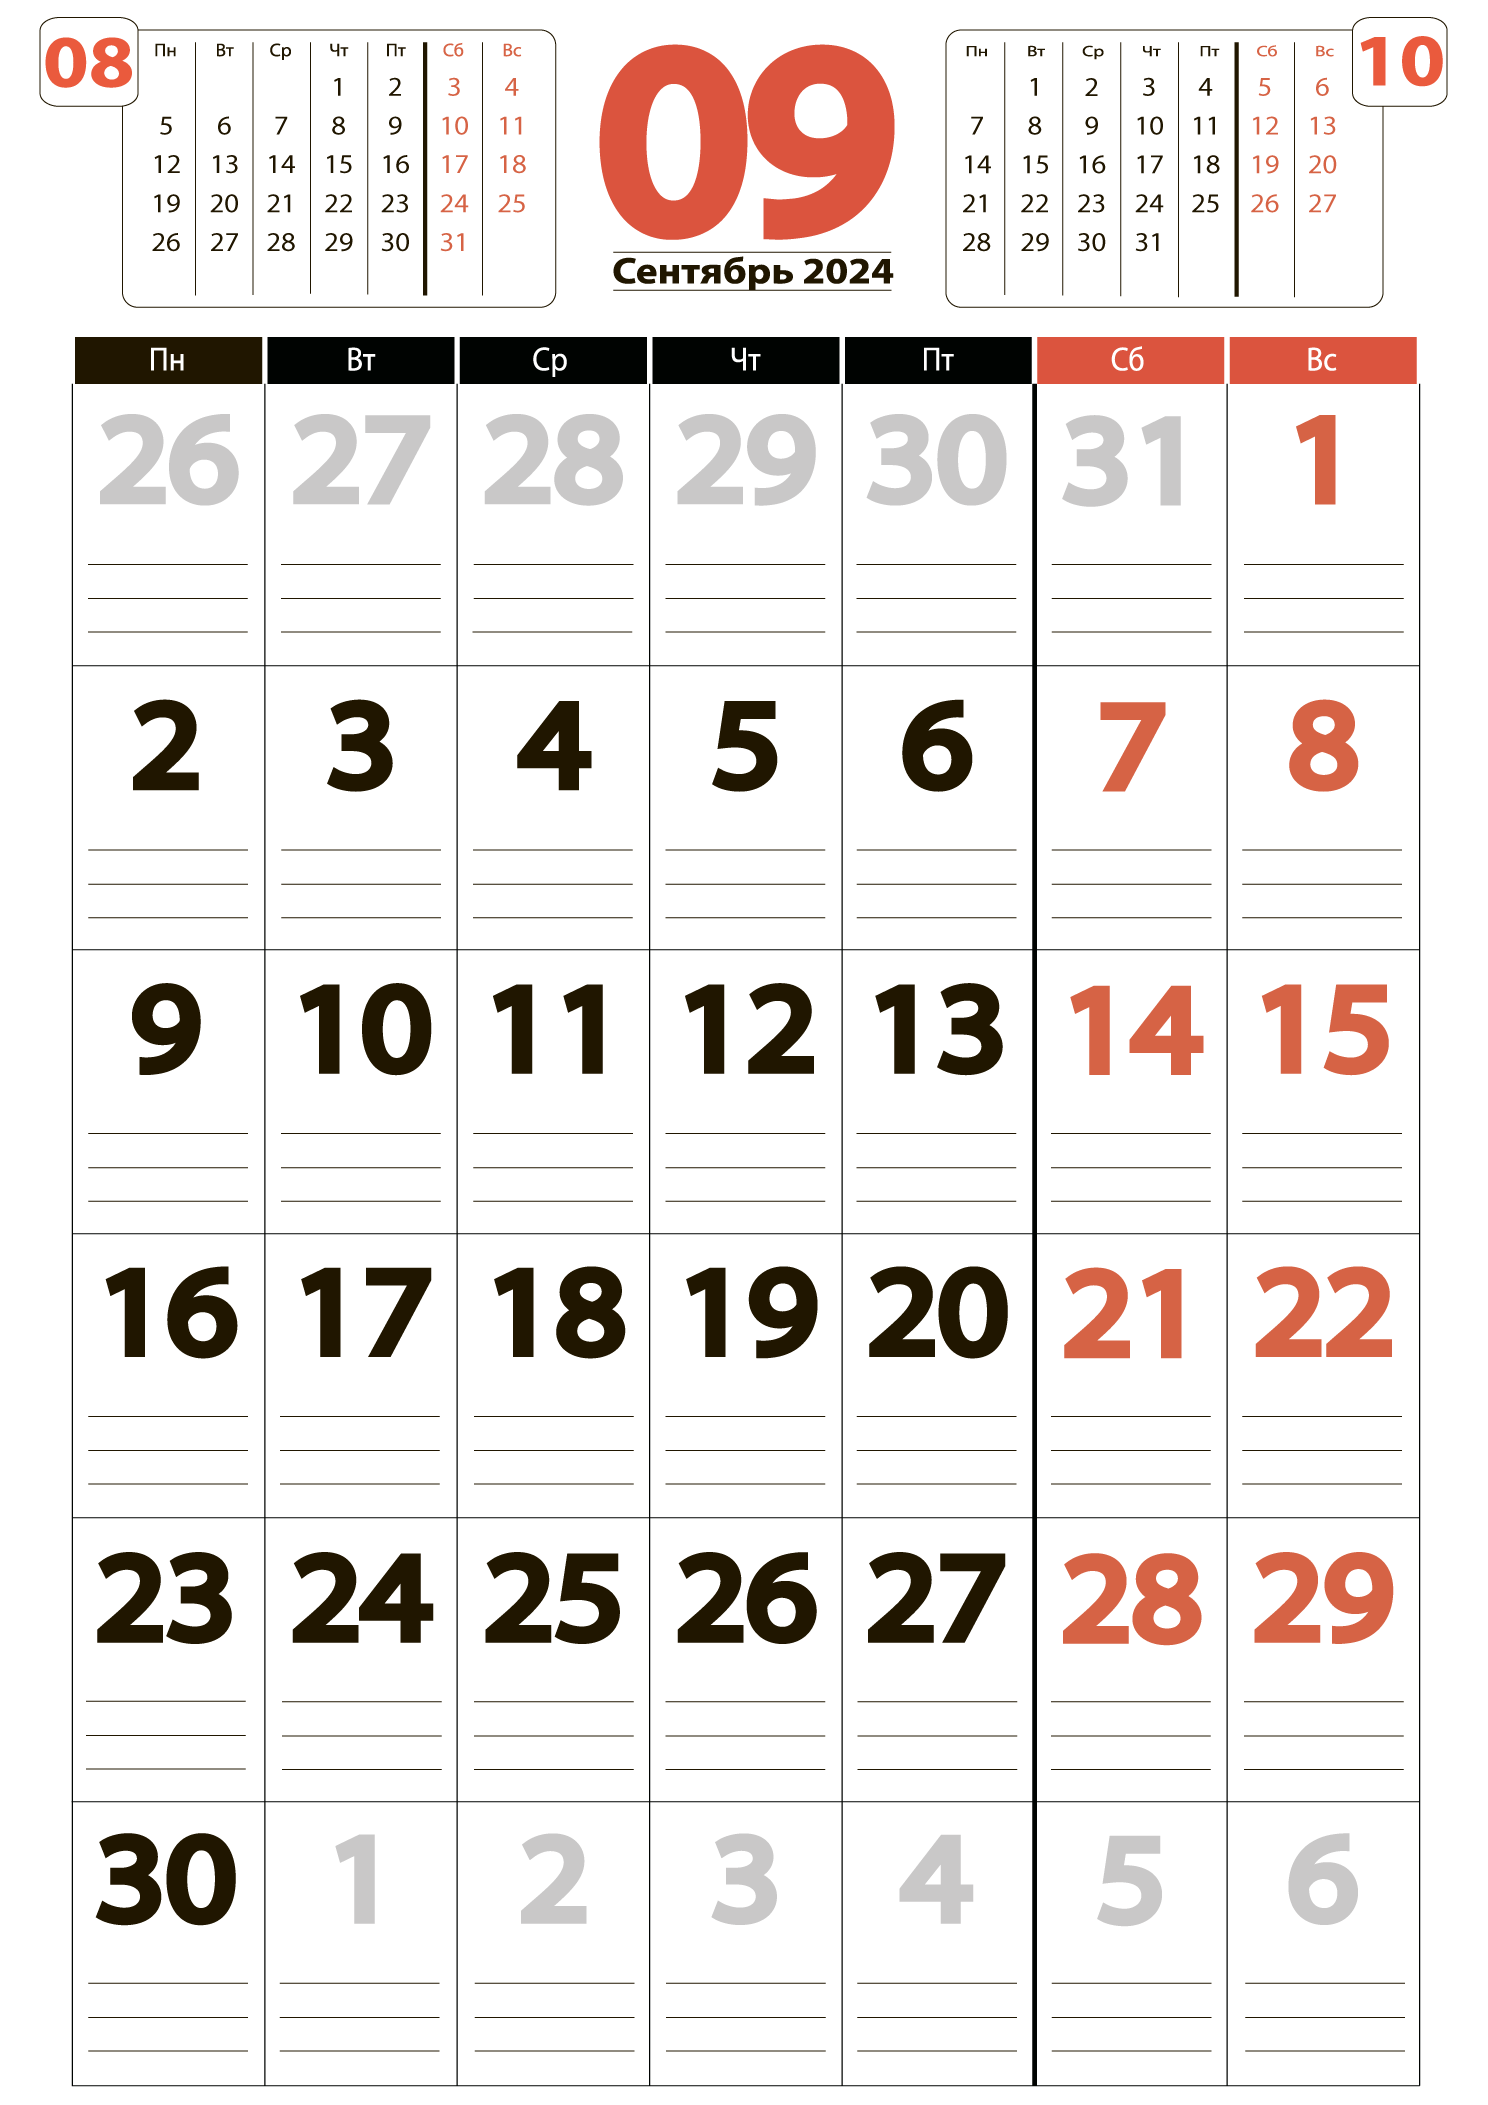 Печать крупного календаря на сентябрь 2024